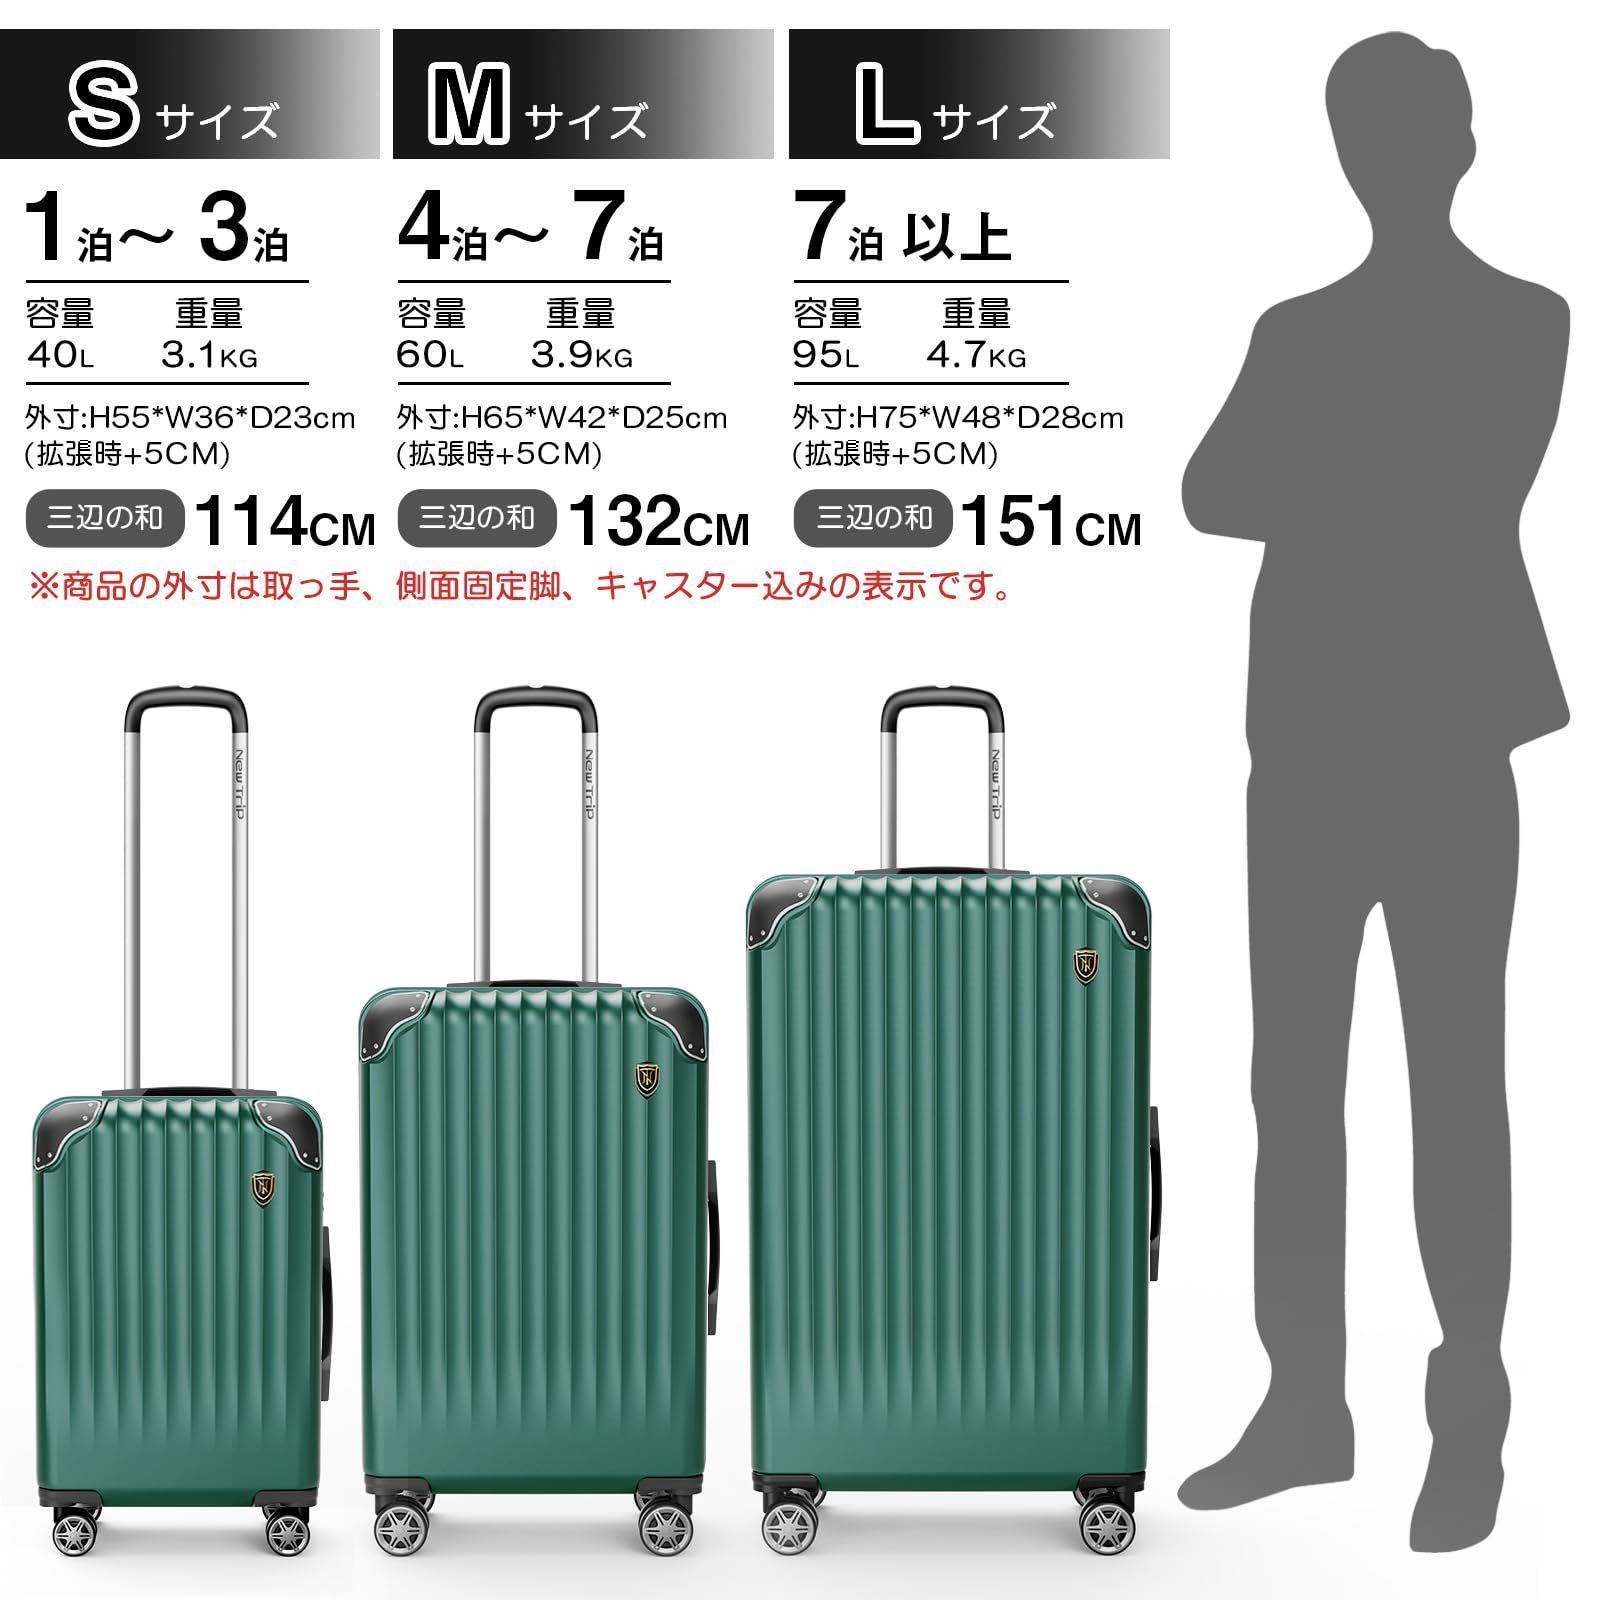 New Trip] スーツケース キャリーケース キャリーバッグ 拡張機能付 耐